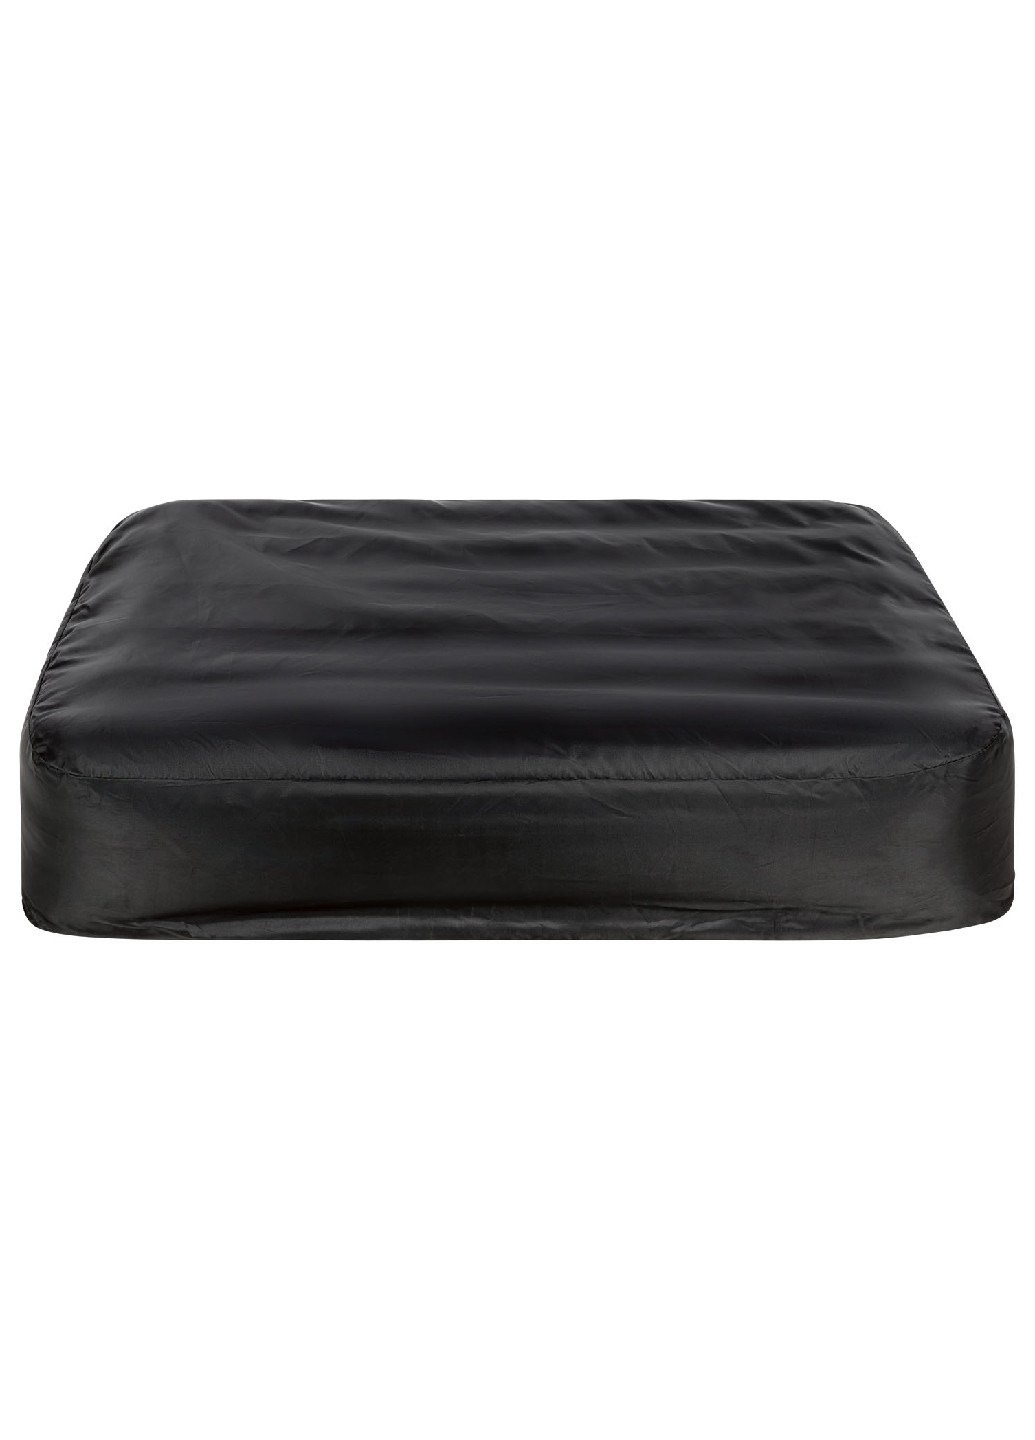 Лежак надувной для собаки черный Zoofari (262085049)